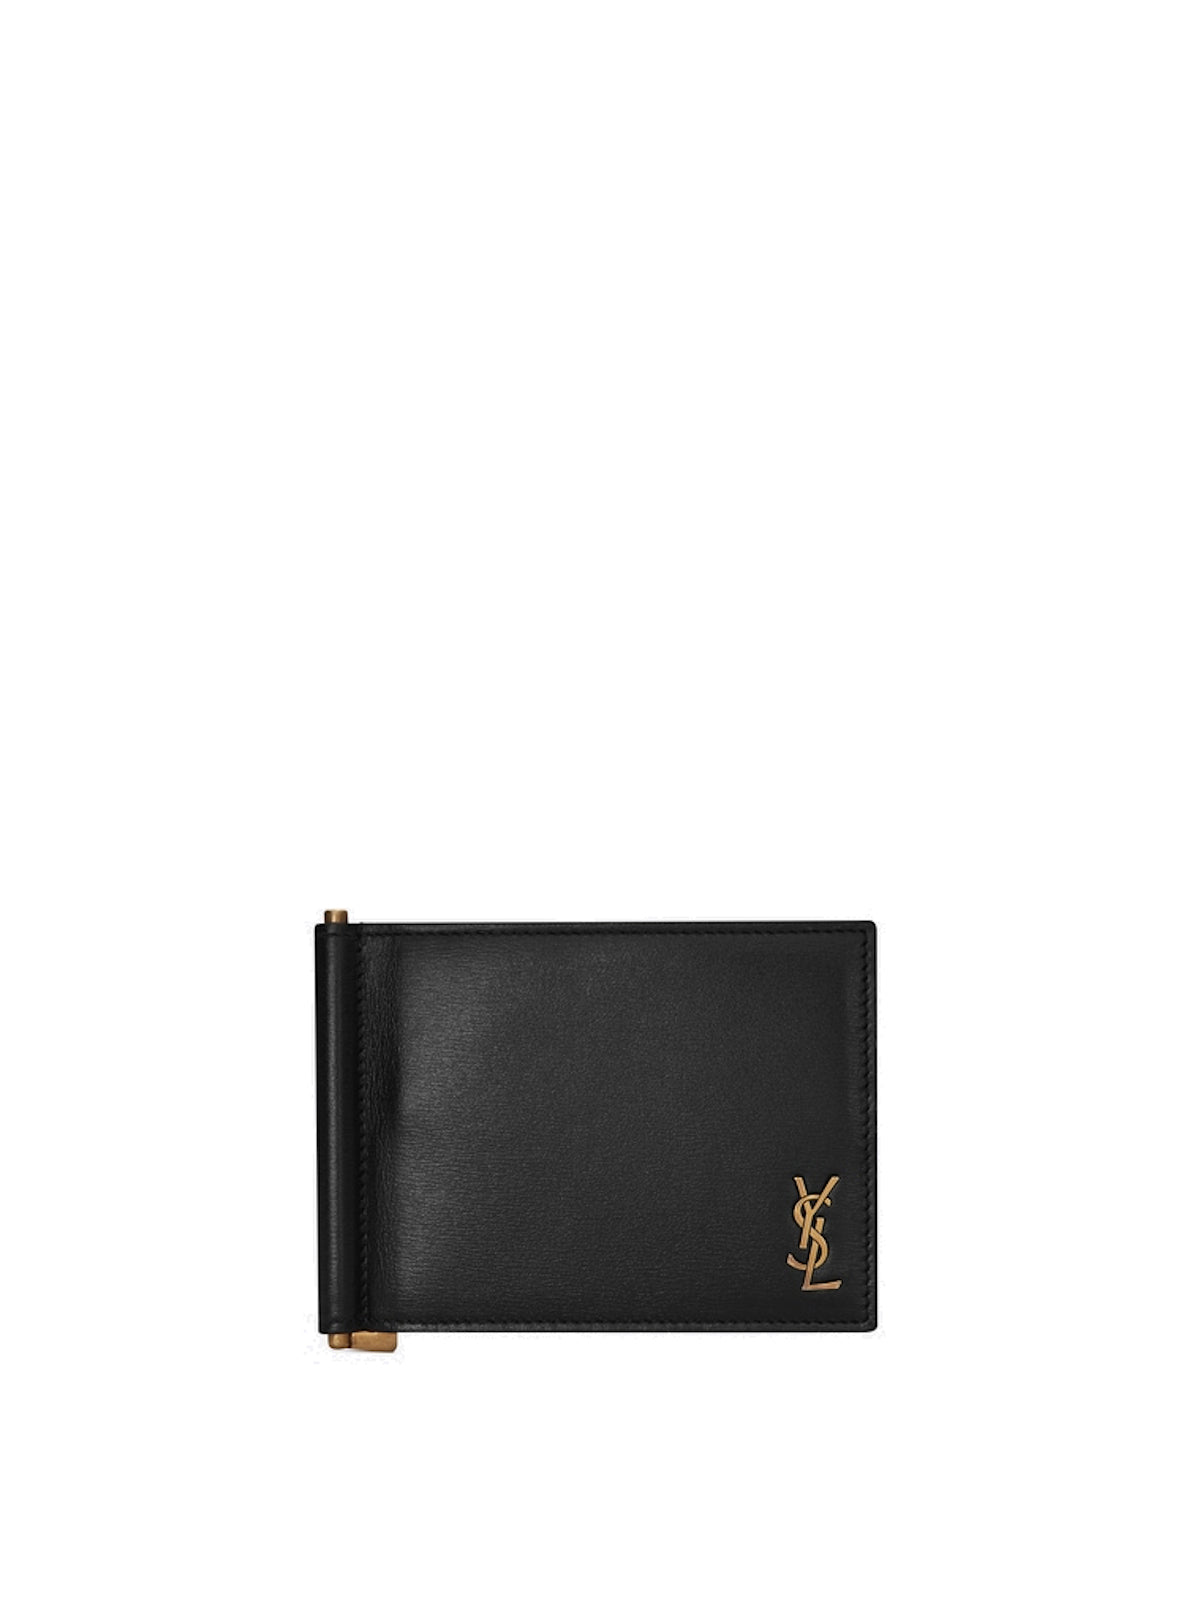 Saint Laurent YSL Bill Clip Wallet - Black Size